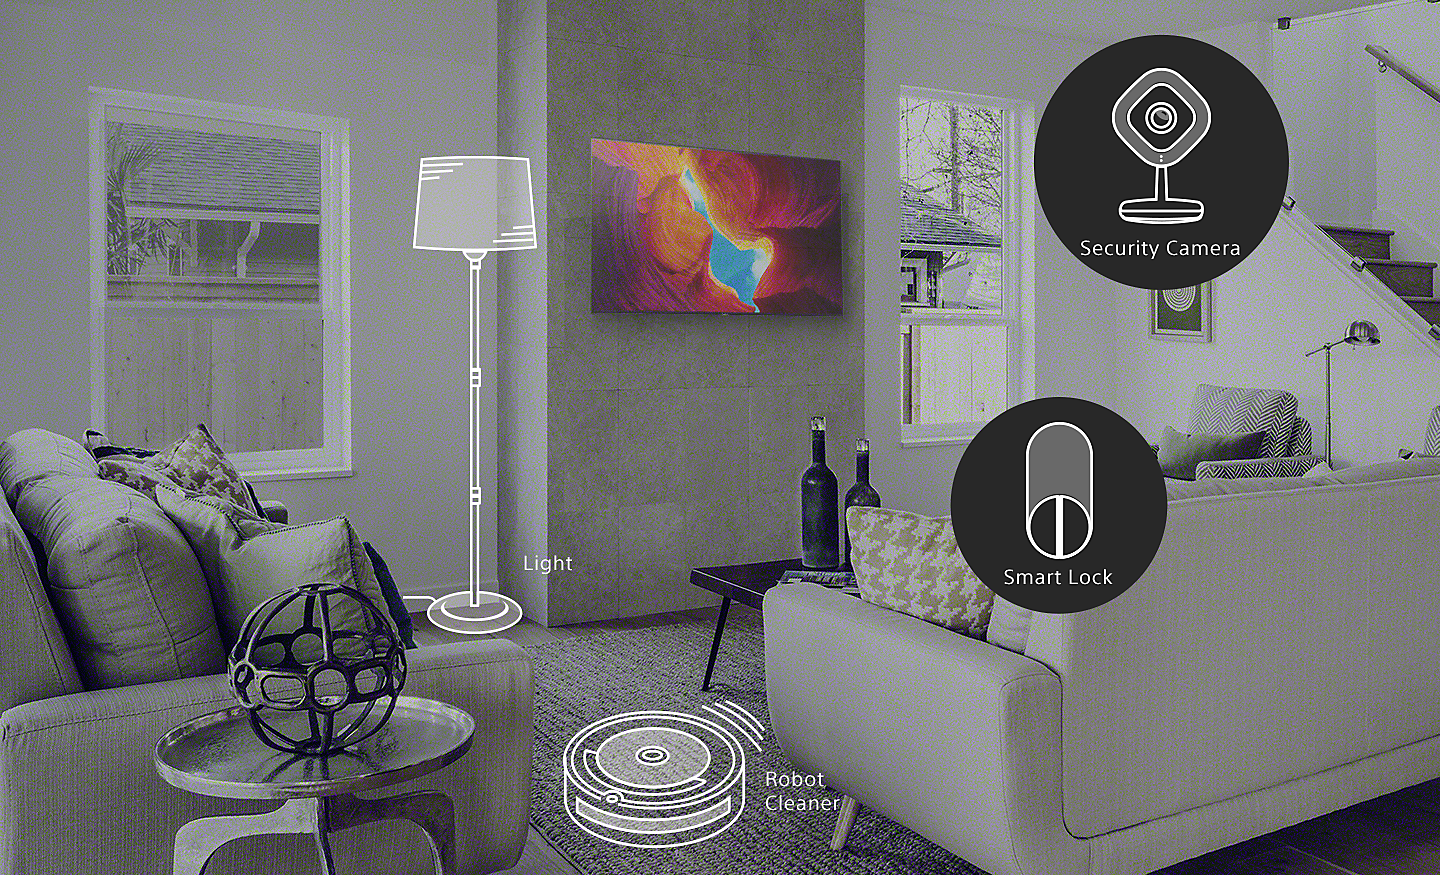 مشهد غرفة معيشة يُظهر أجهزة منزلية ذكية بما في ذلك الإضاءة وروبوت للتنظيف وكاميرا أمنية وقفل ذكي